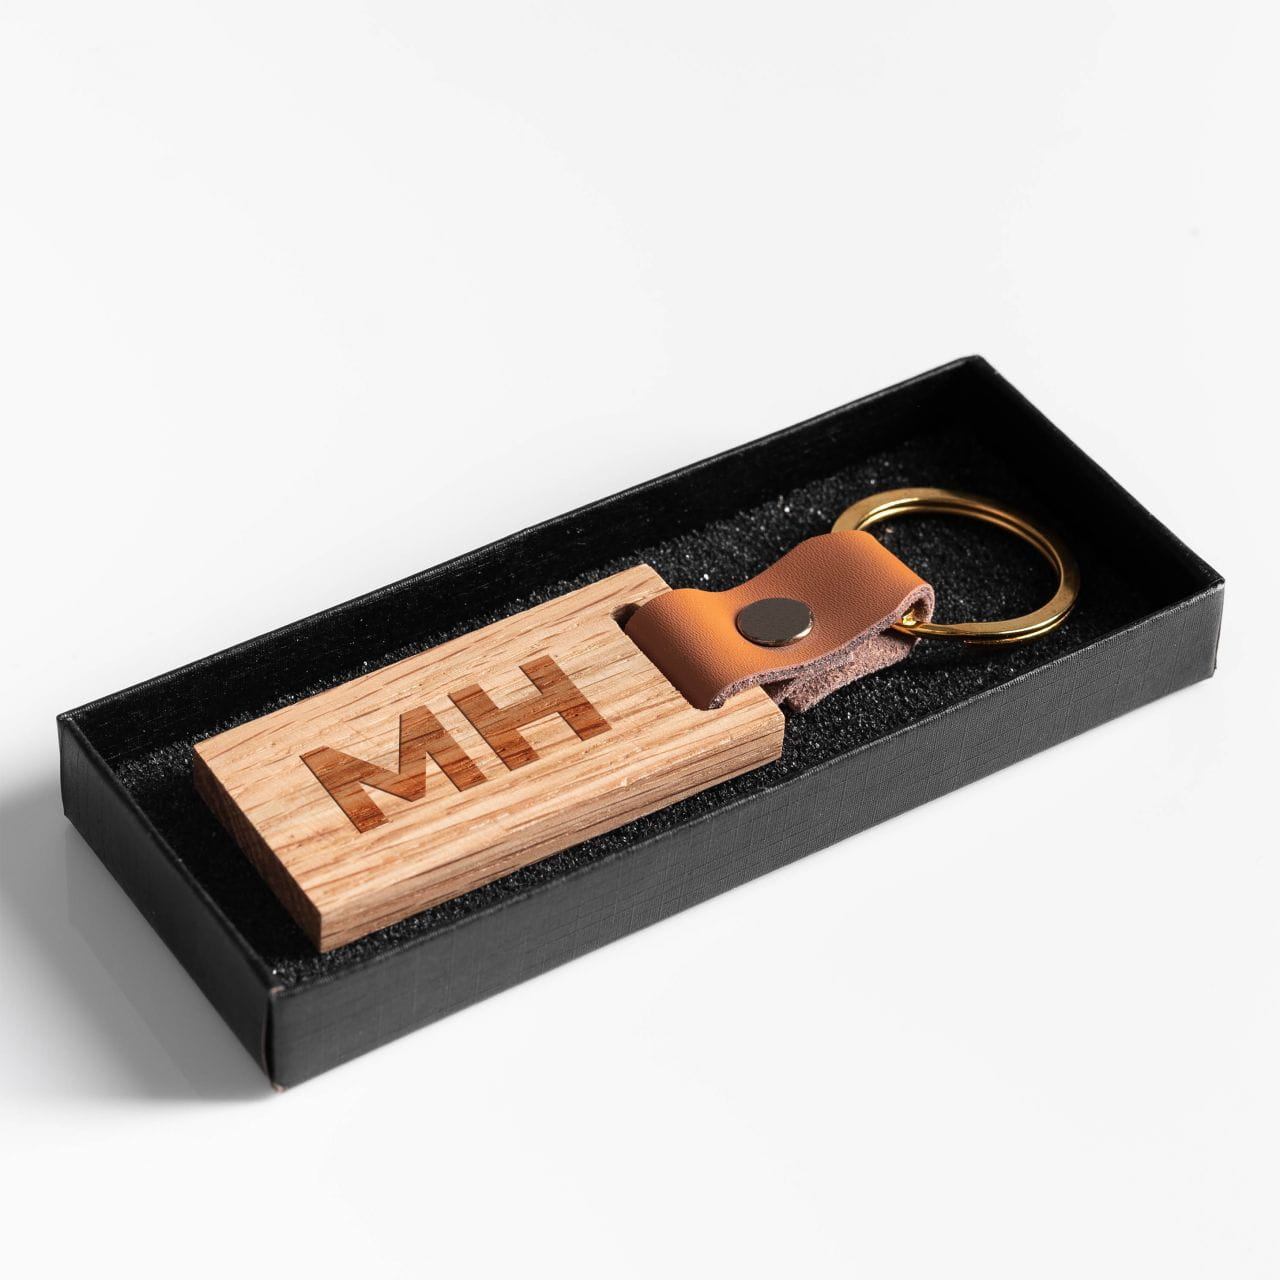 Drewniany brelok z grawerem jako praktyczny pomysł na prezent z drewna